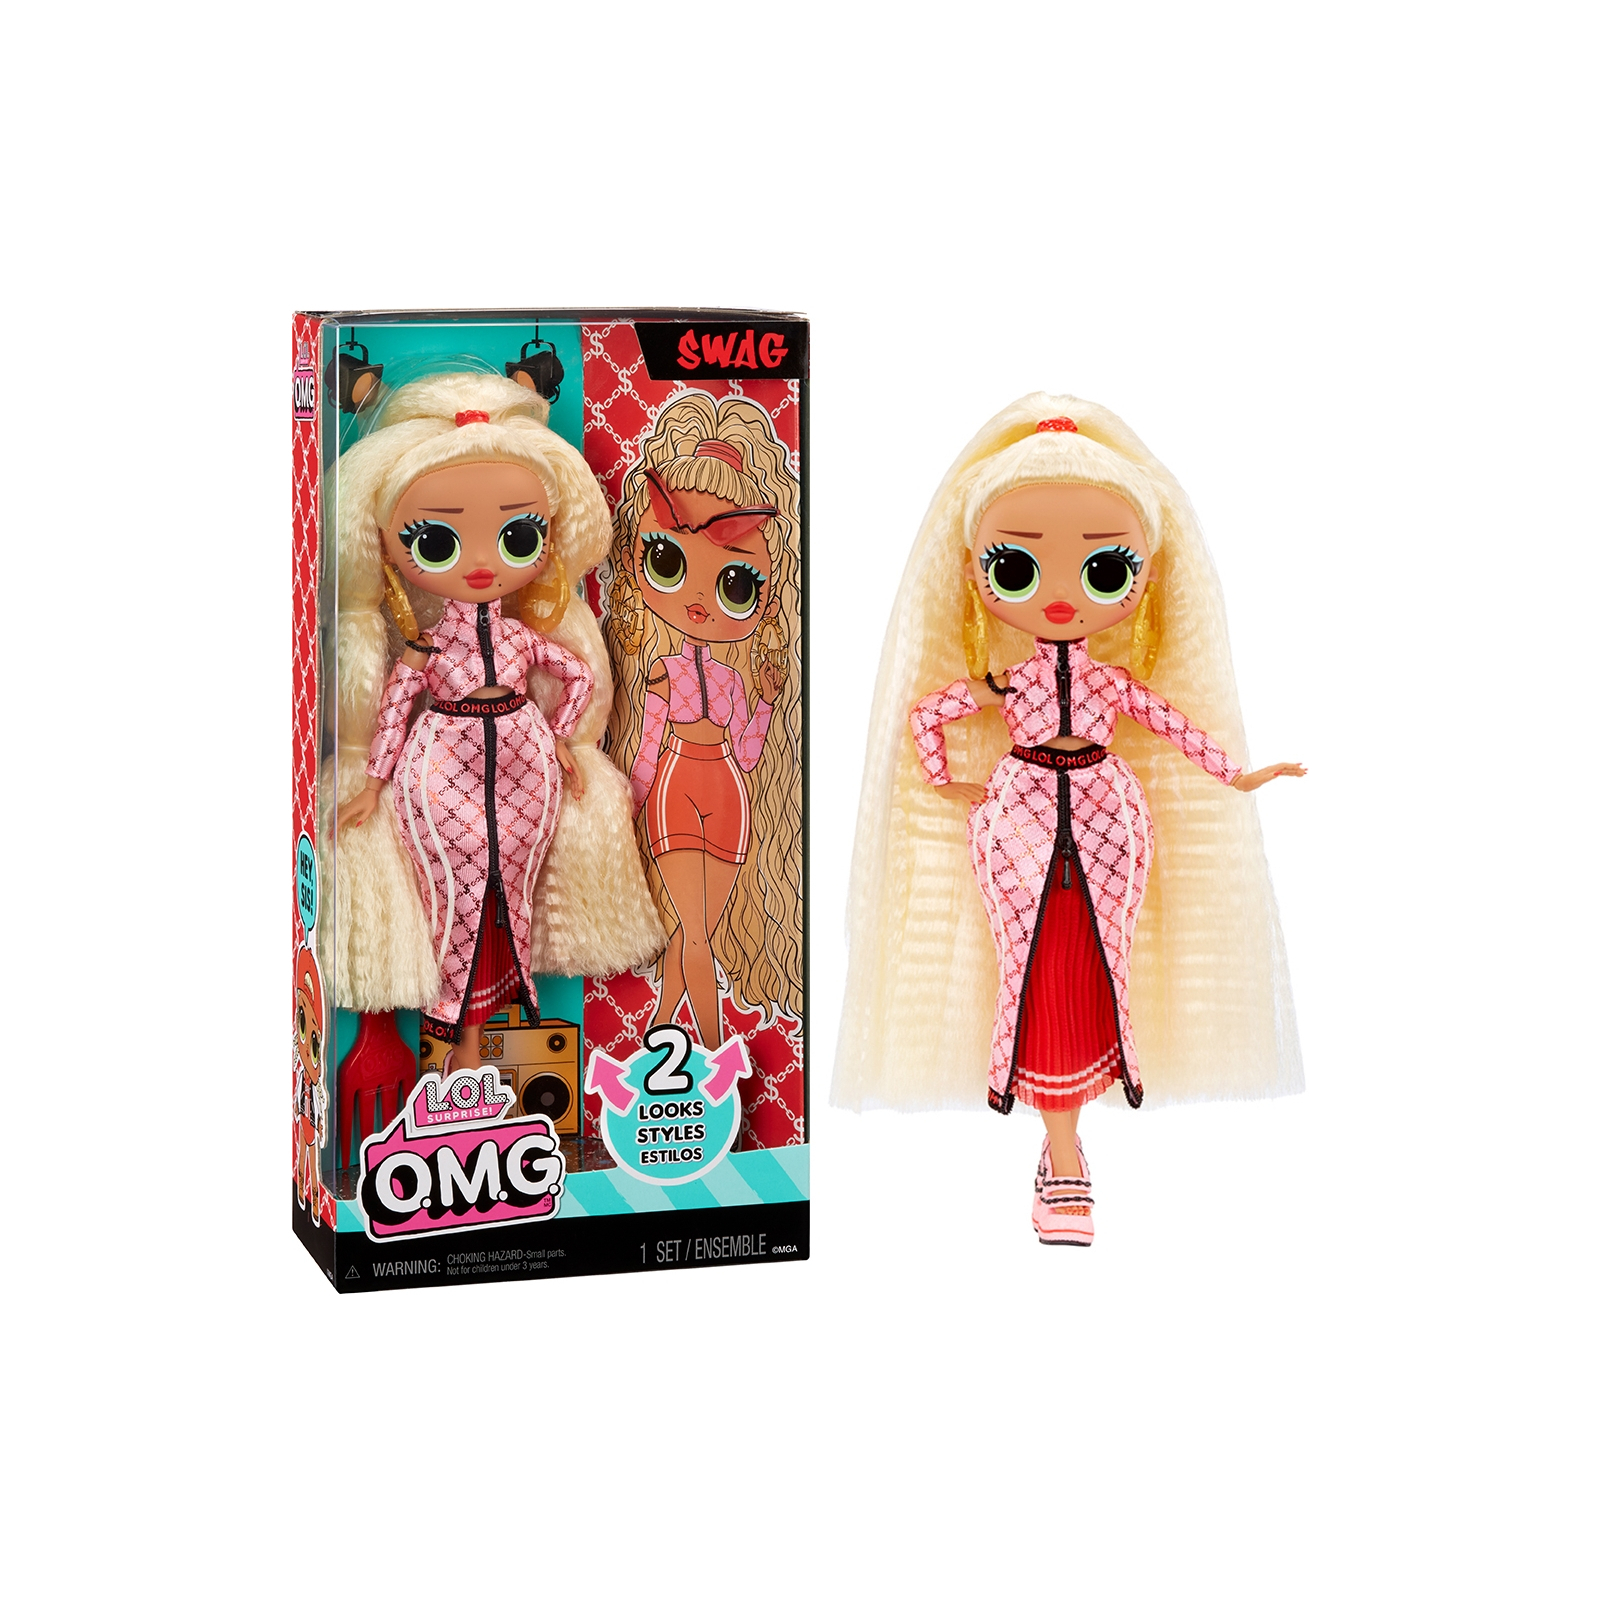 Кукла L.O.L. Surprise! серии O.M.G. HoS - Свег (591573) изображение 6